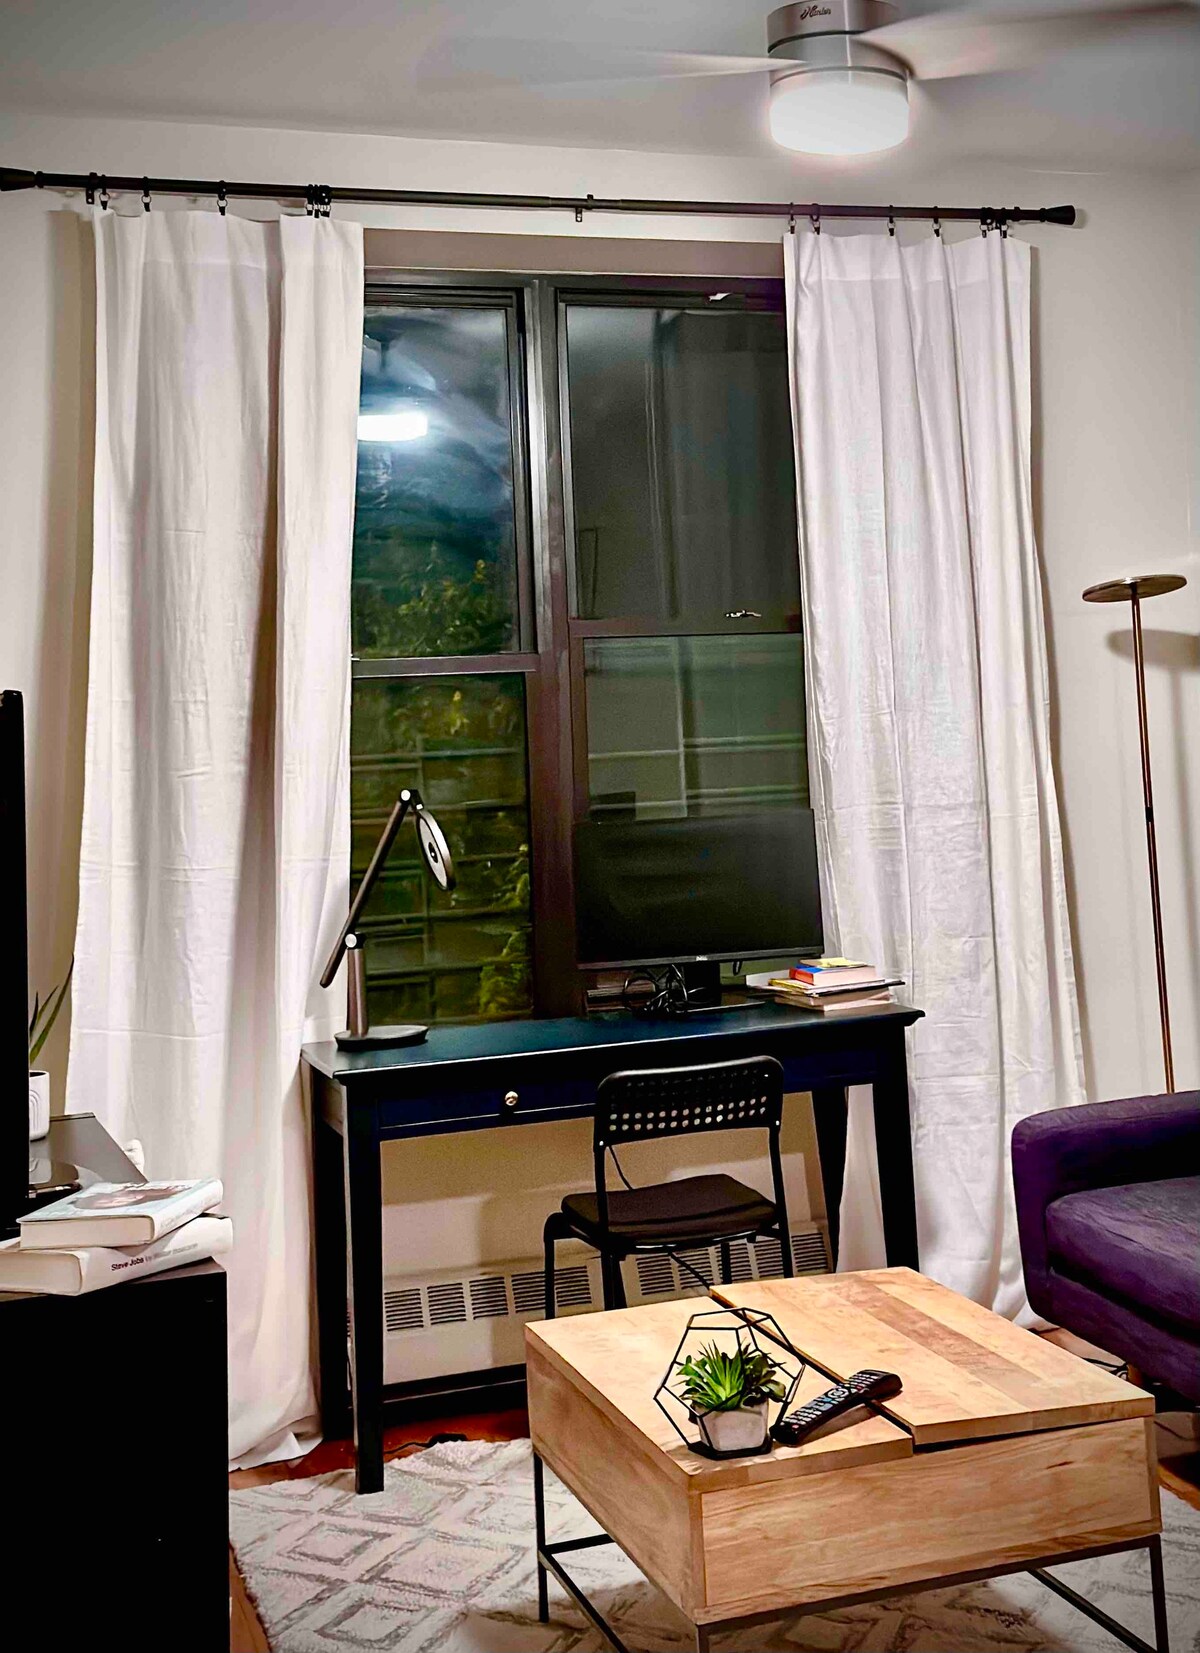 配备家居便利设施的现代化公寓、厨房和空调